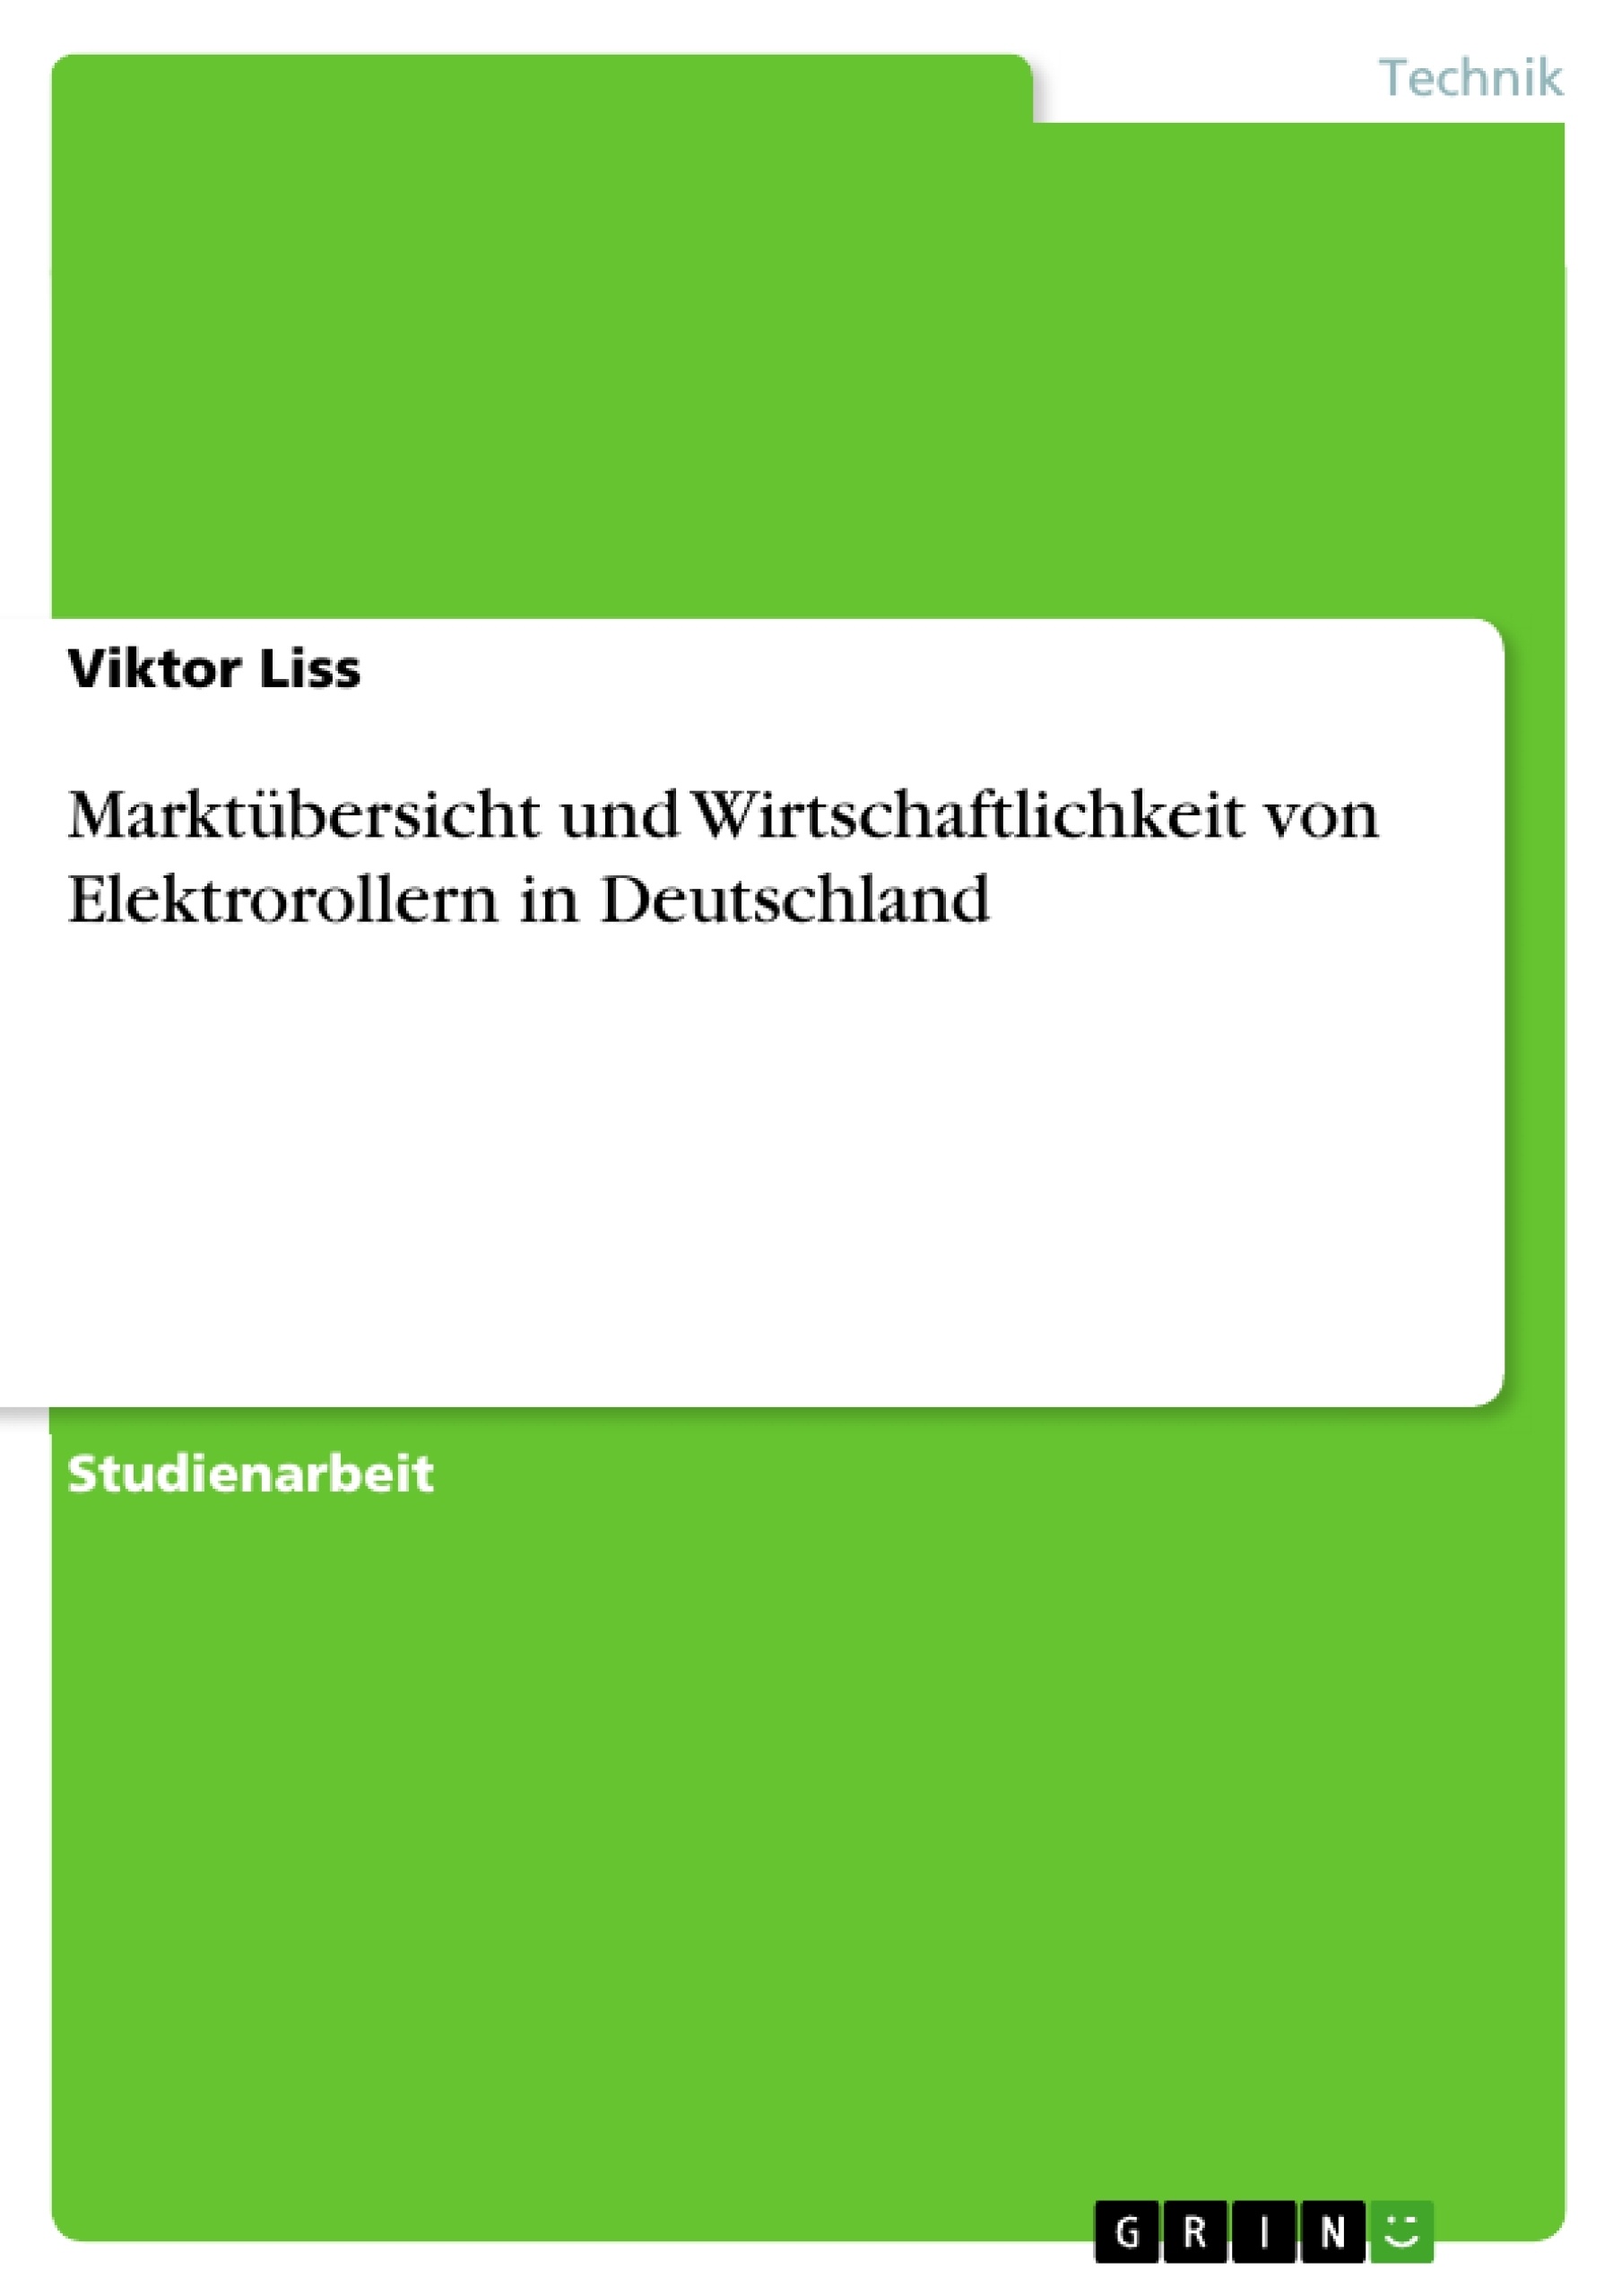 Title: Marktübersicht und Wirtschaftlichkeit von Elektrorollern in Deutschland